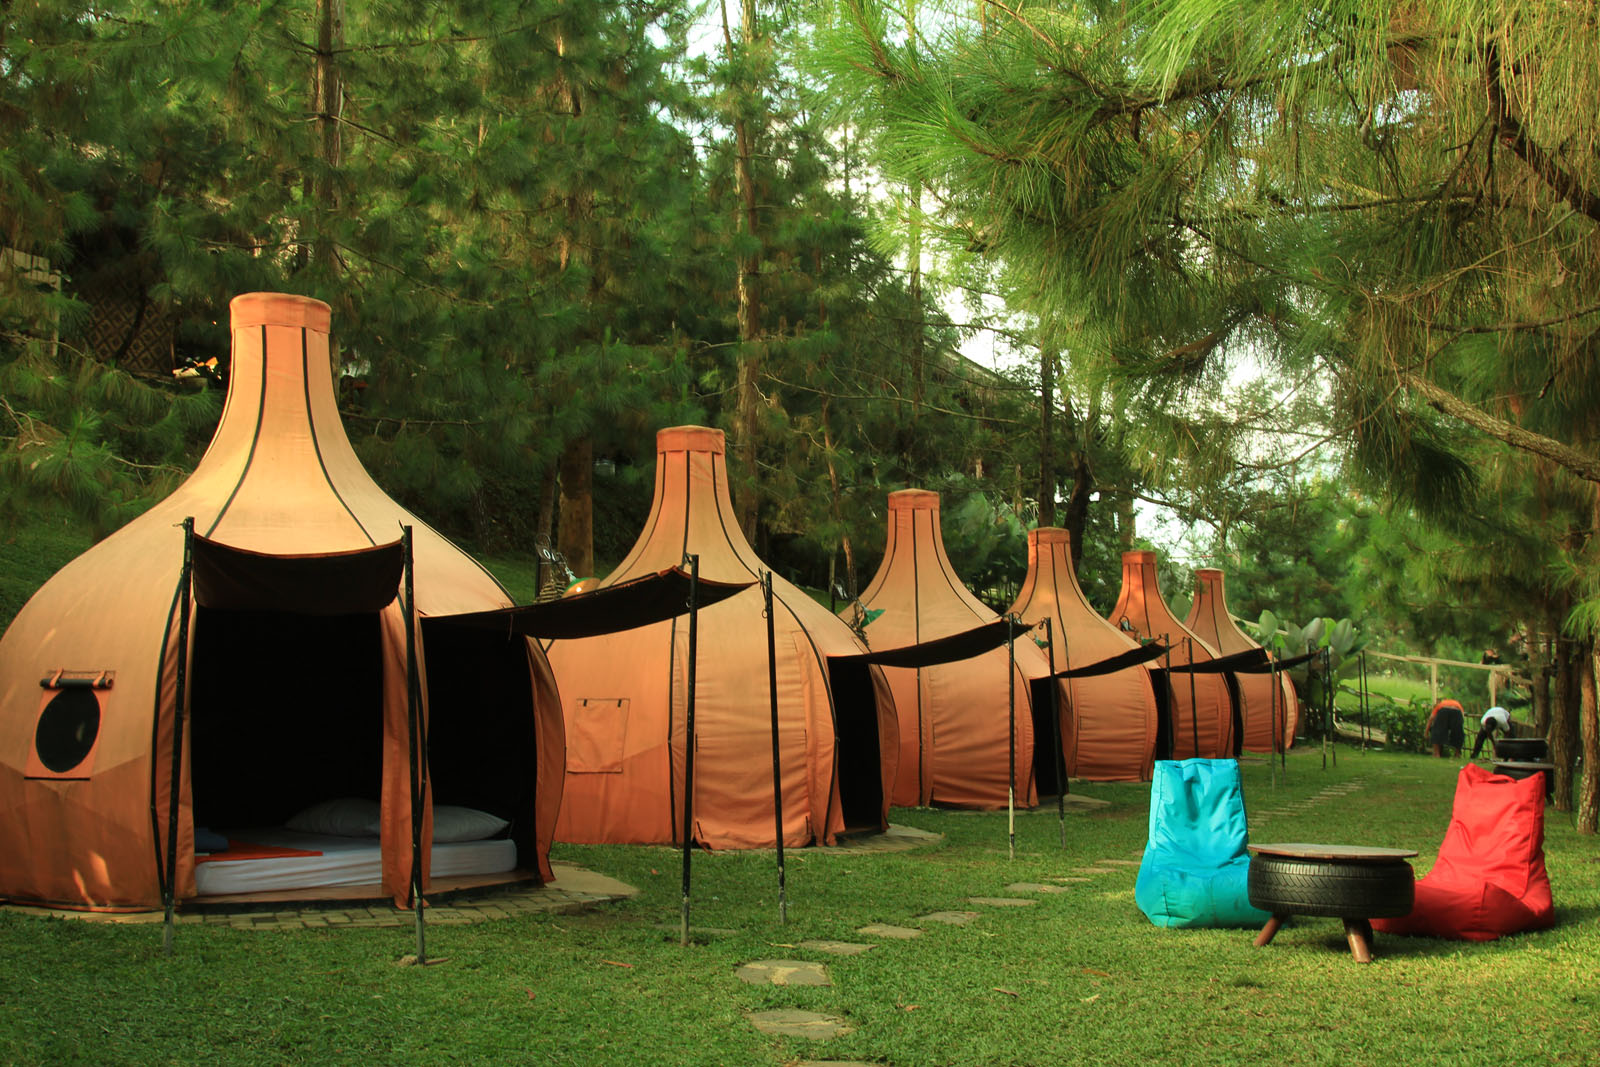  Sewa  Tenda  Harga Sewa Tenda Camping Bandung 